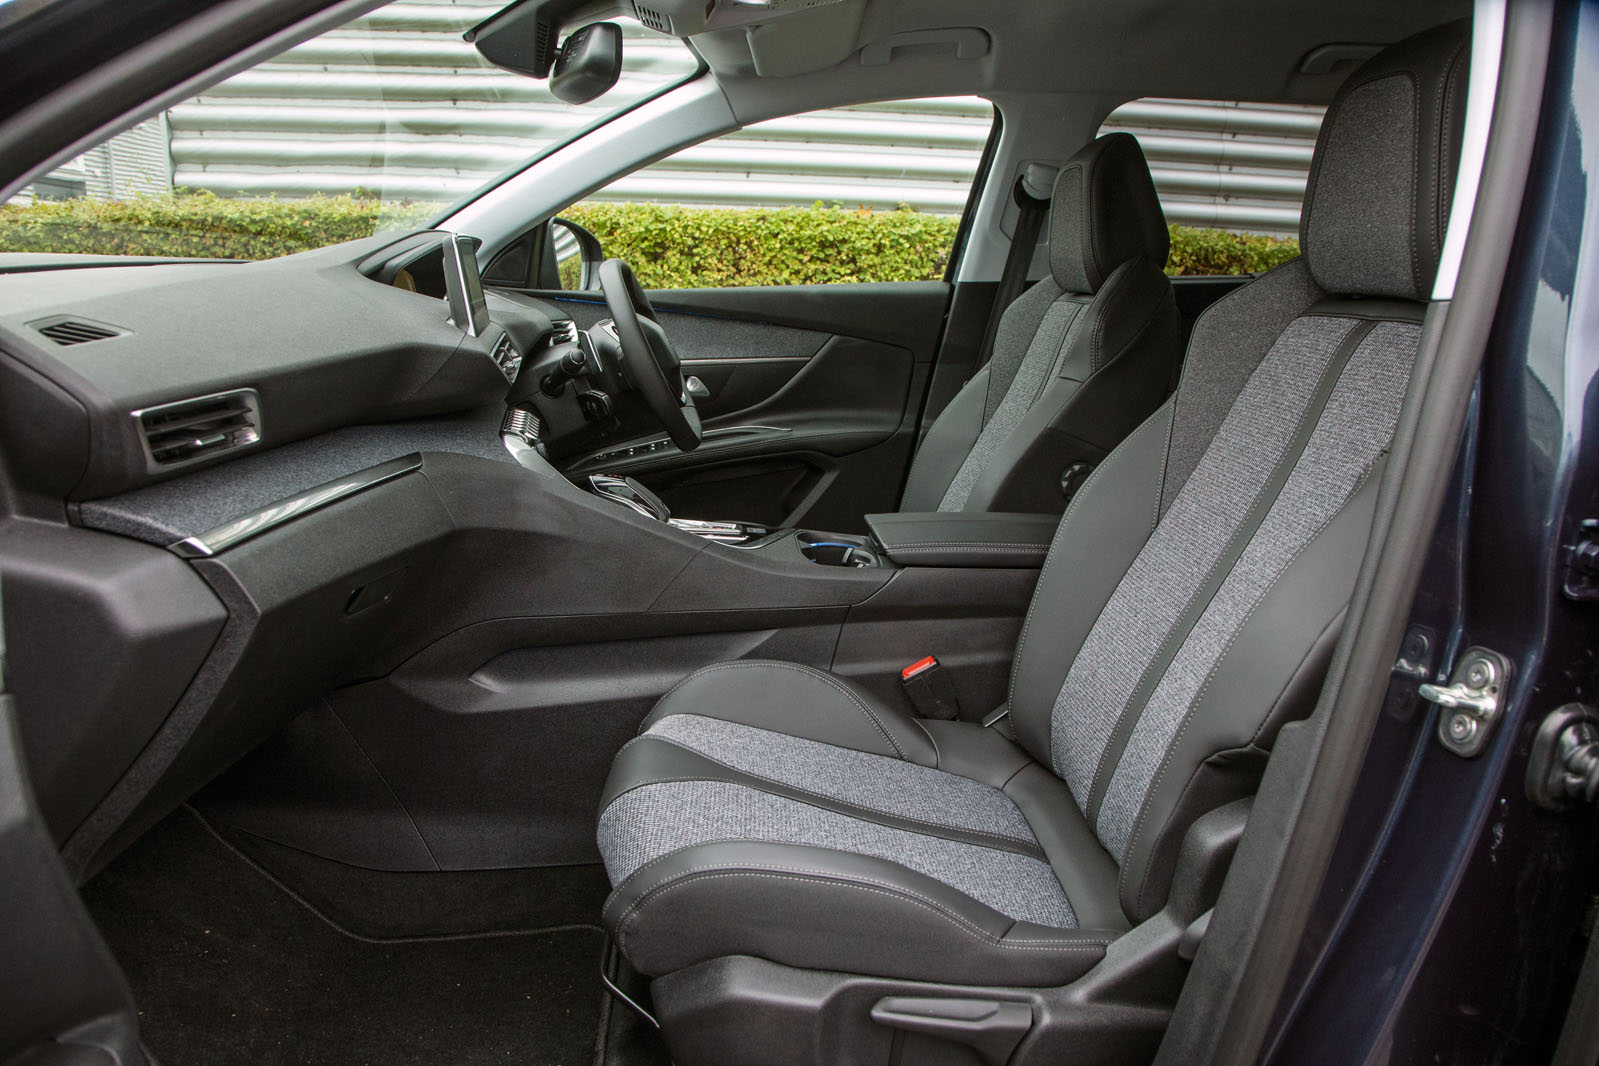 Peugeot 5008 interior